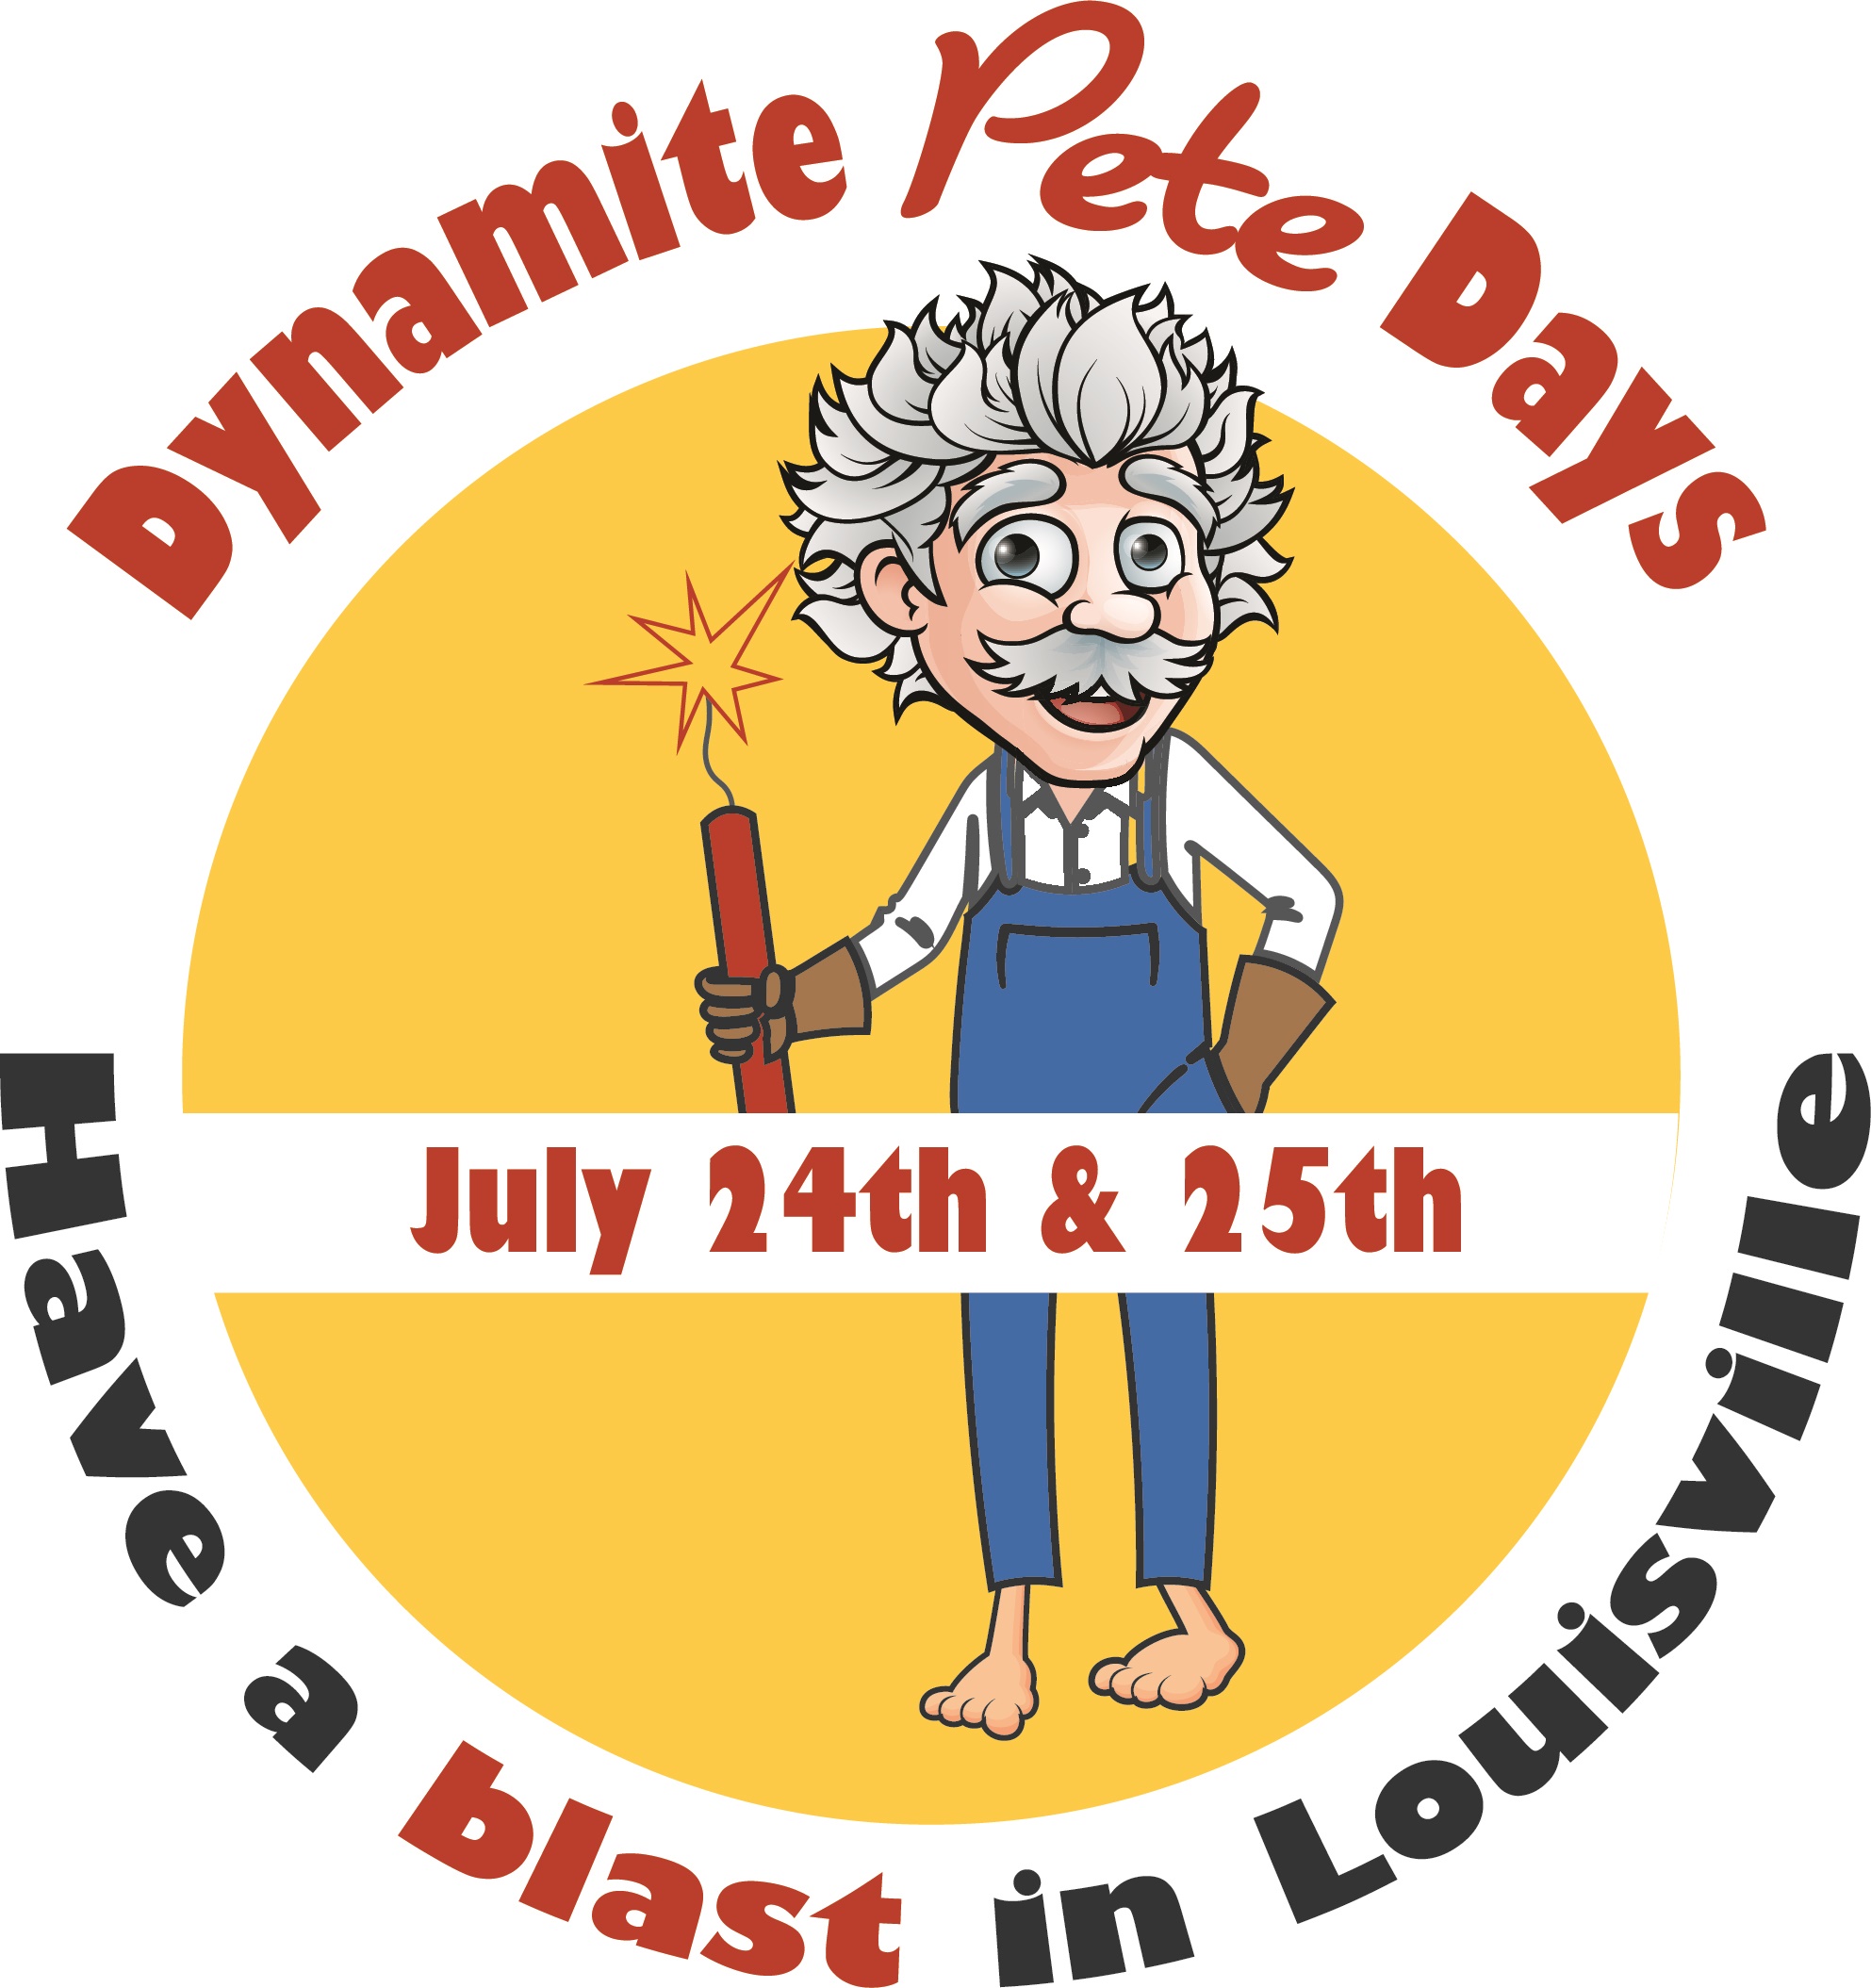 Dynamite Pete Days 2021